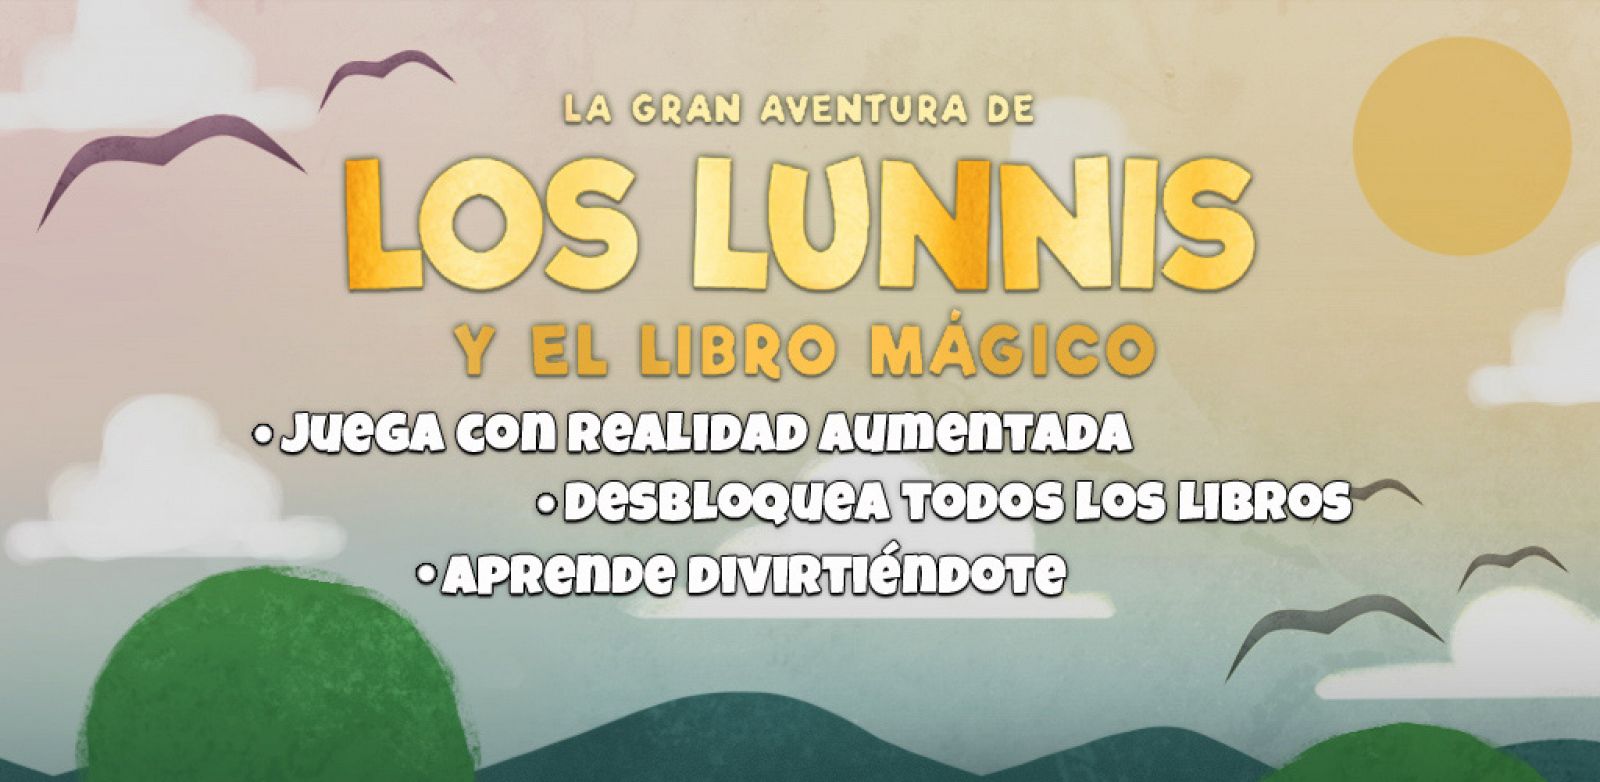 'La gran aventura de los Lunnis' nos hace viajar al mundo mágico de los cuentos de la mano de Los Lunnis